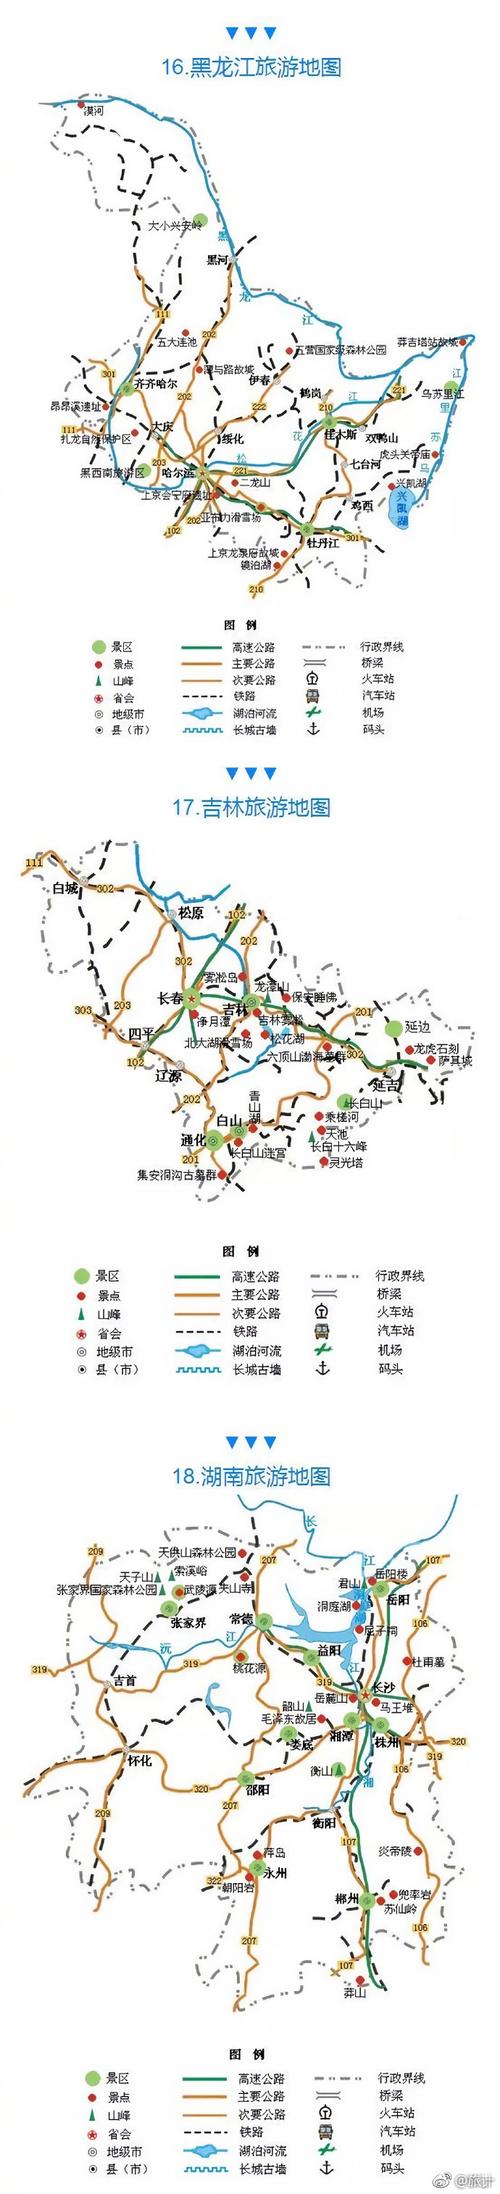 国内旅游路线规划